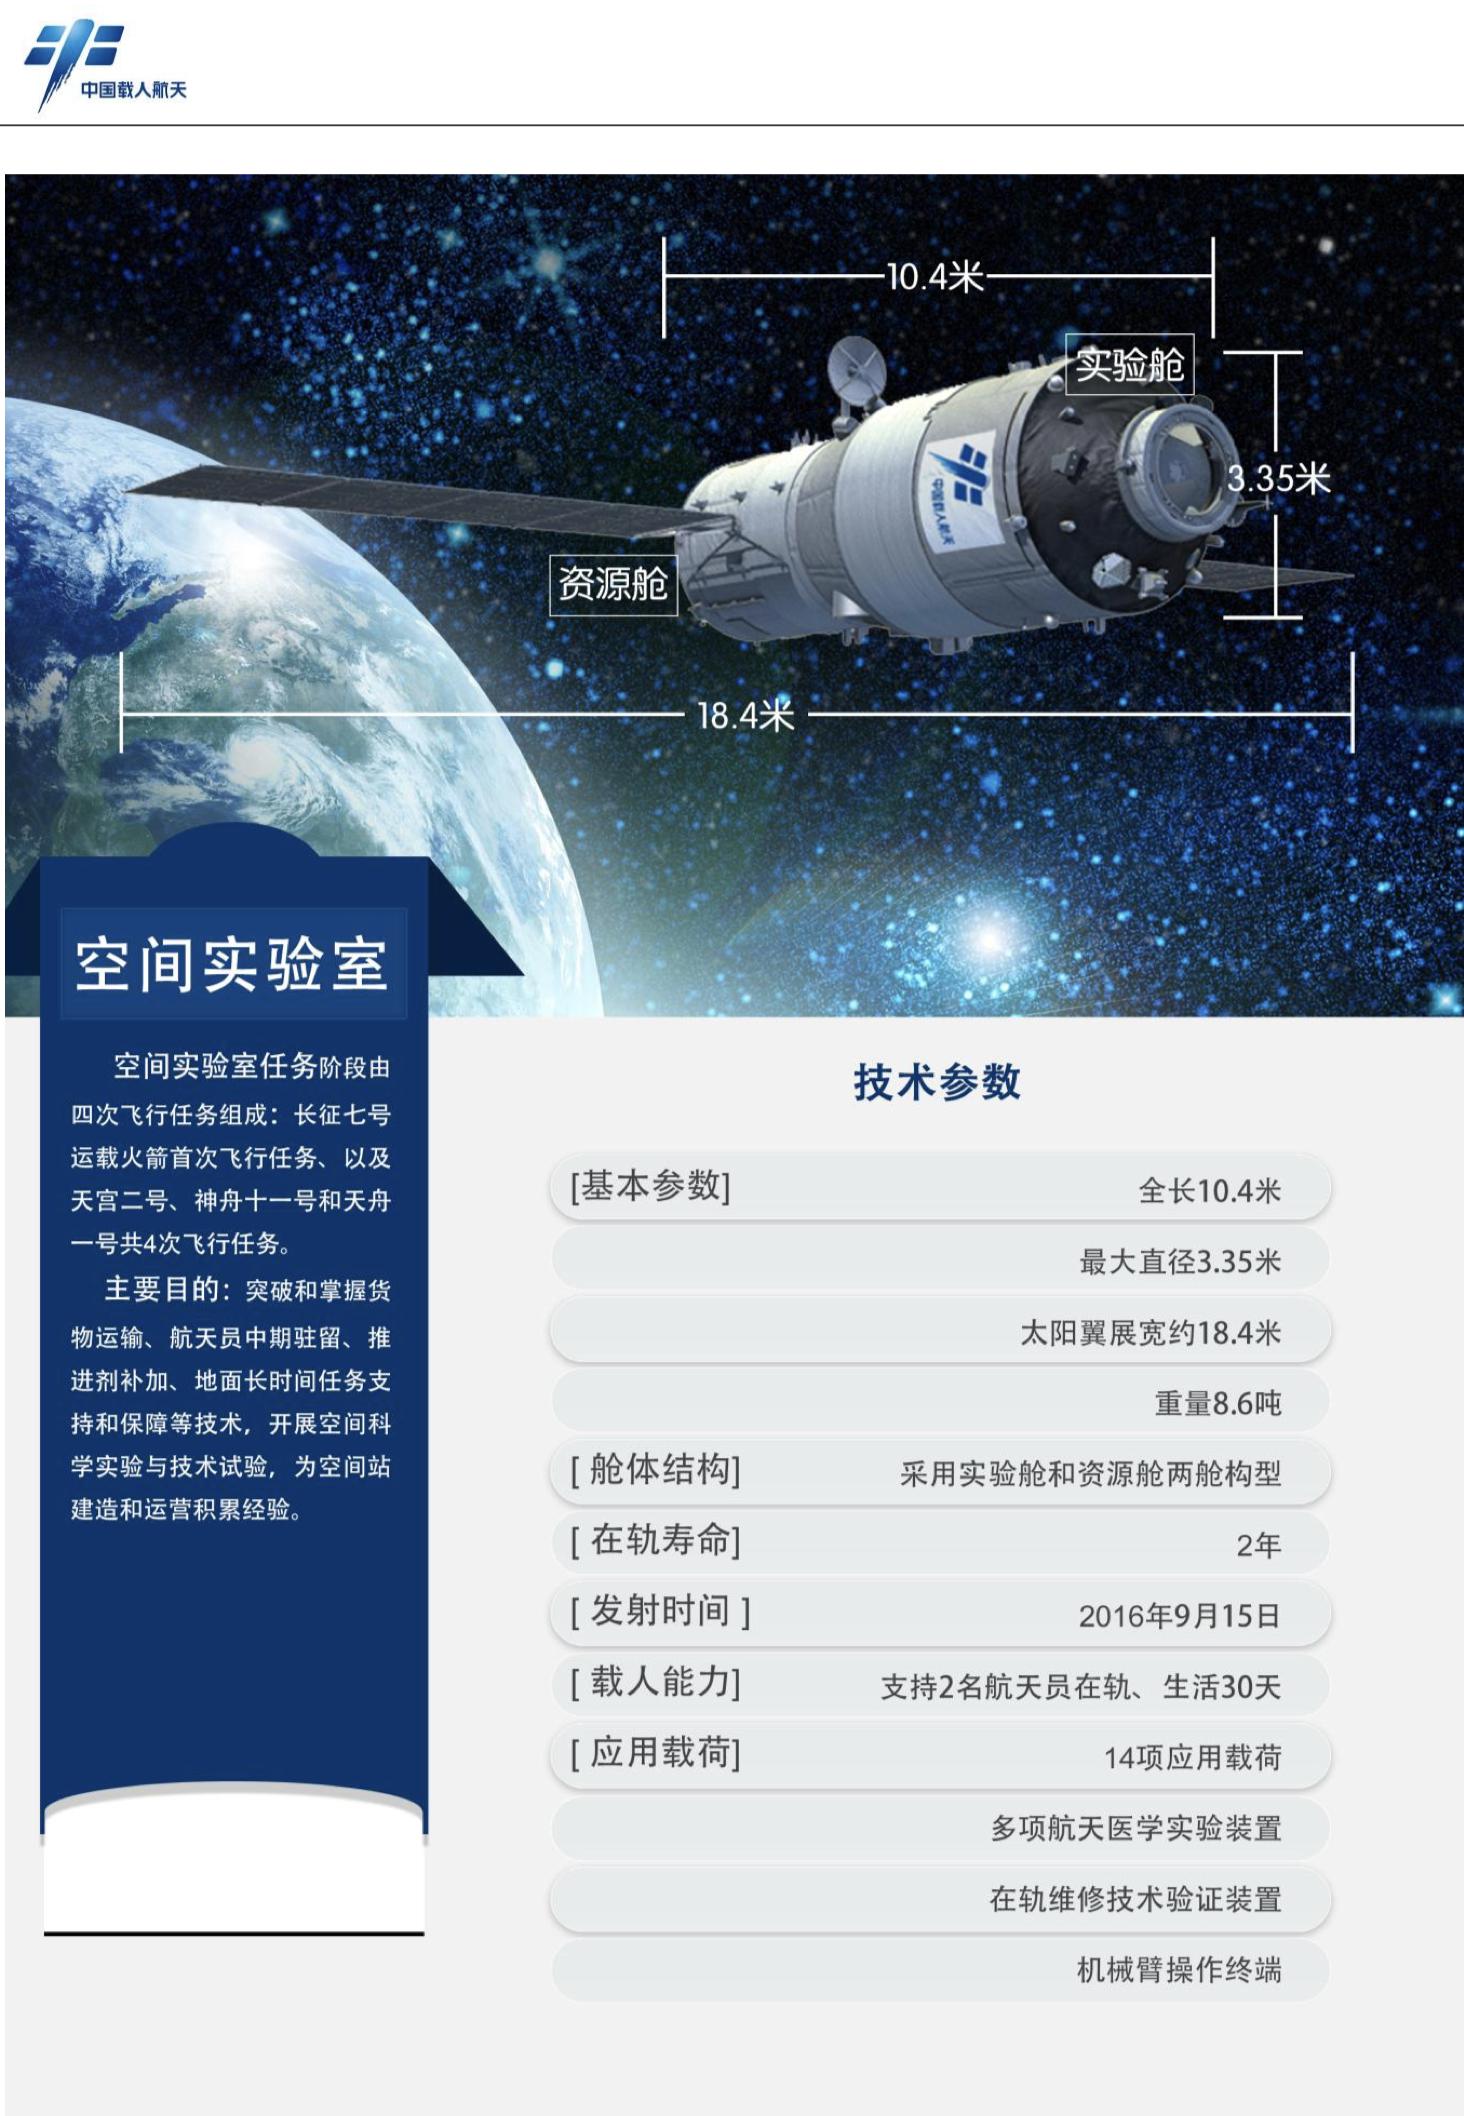 天宫二号空间实验室任务图。图源：中国载人航天网